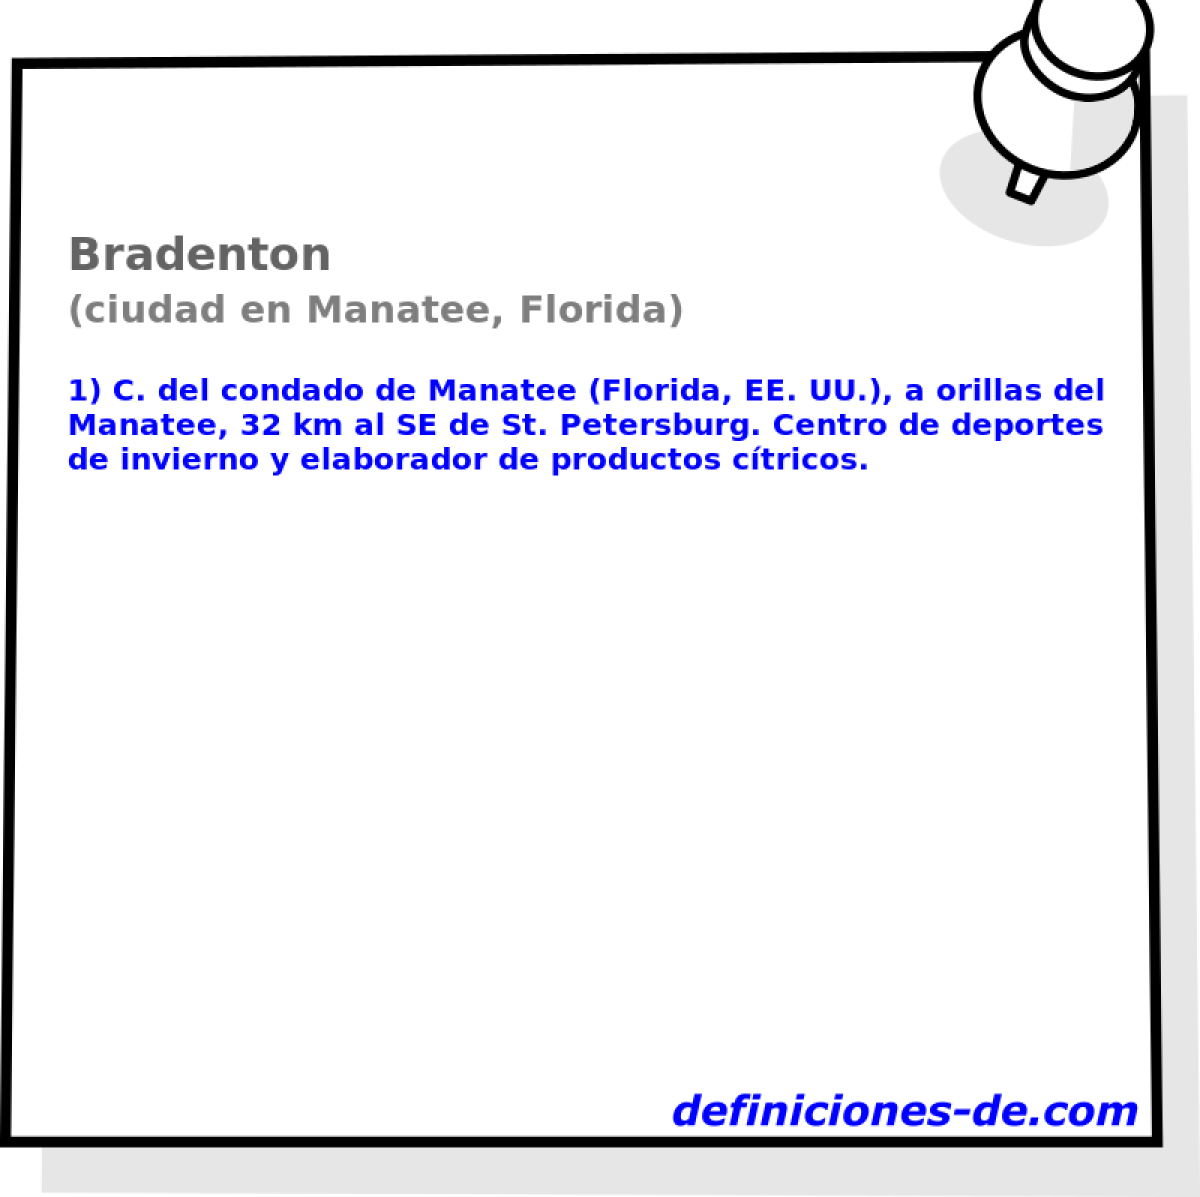 Bradenton (ciudad en Manatee, Florida)